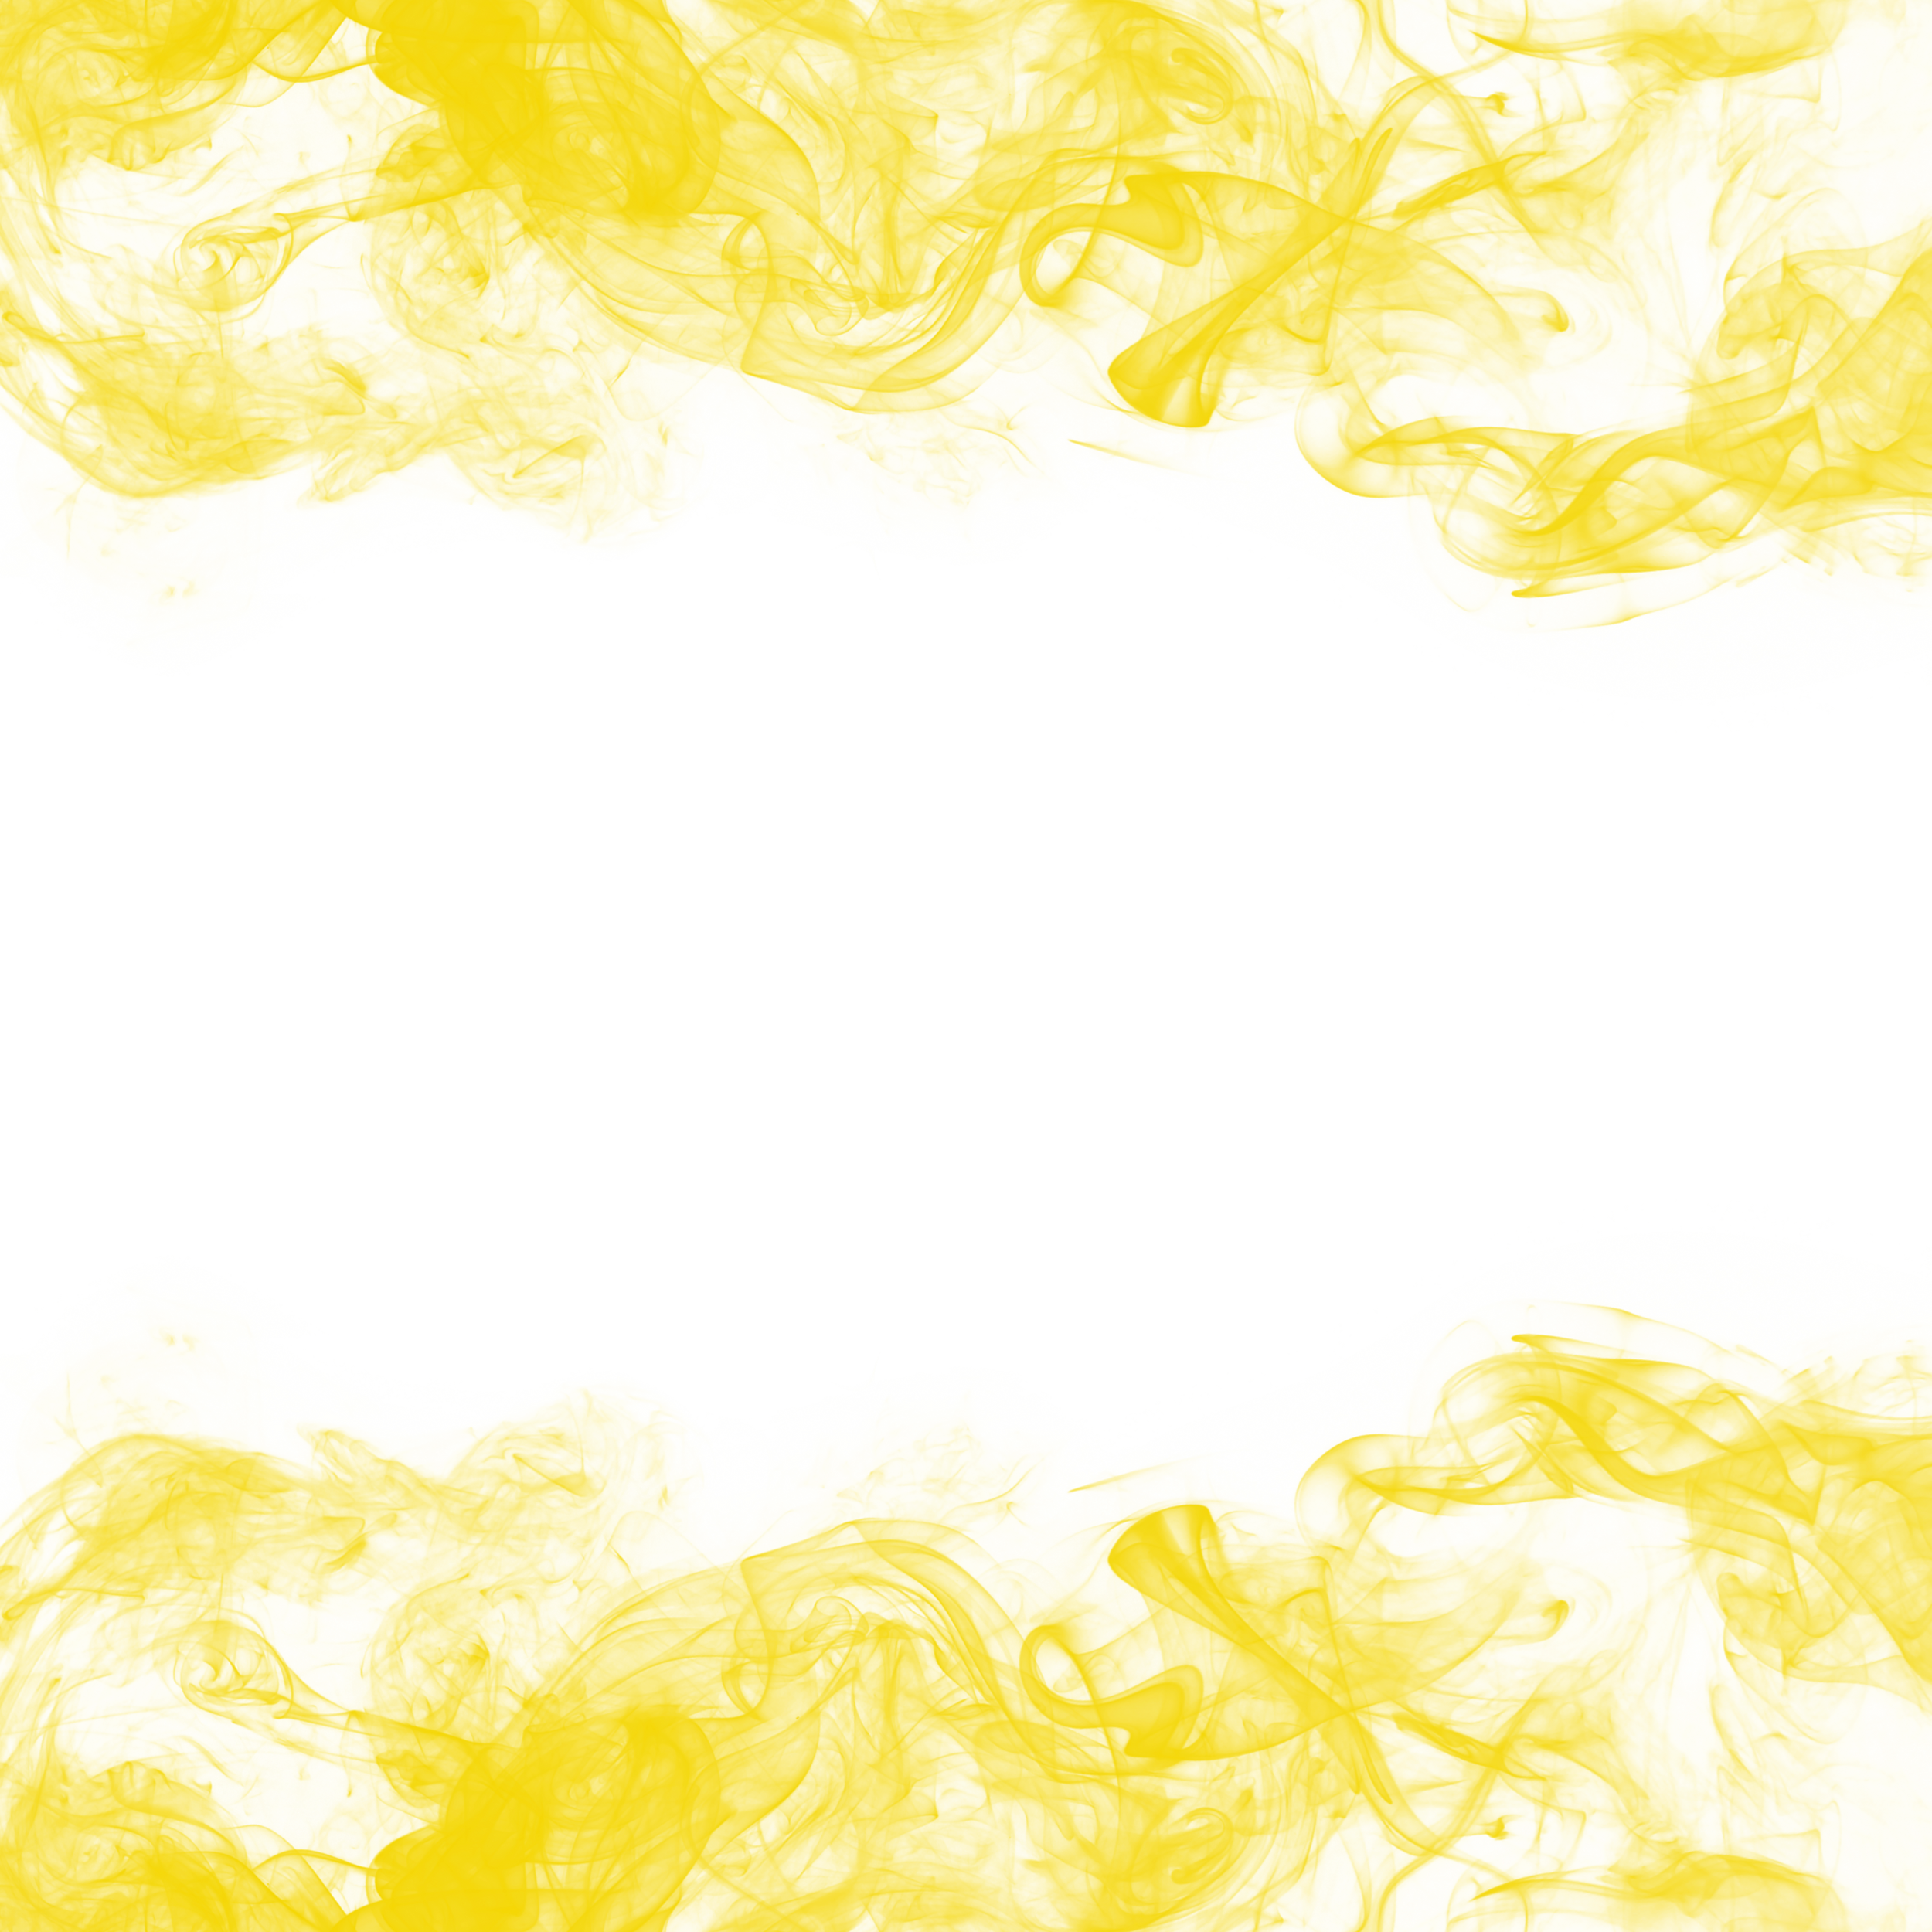 Abstract Yellow Smoke Frame